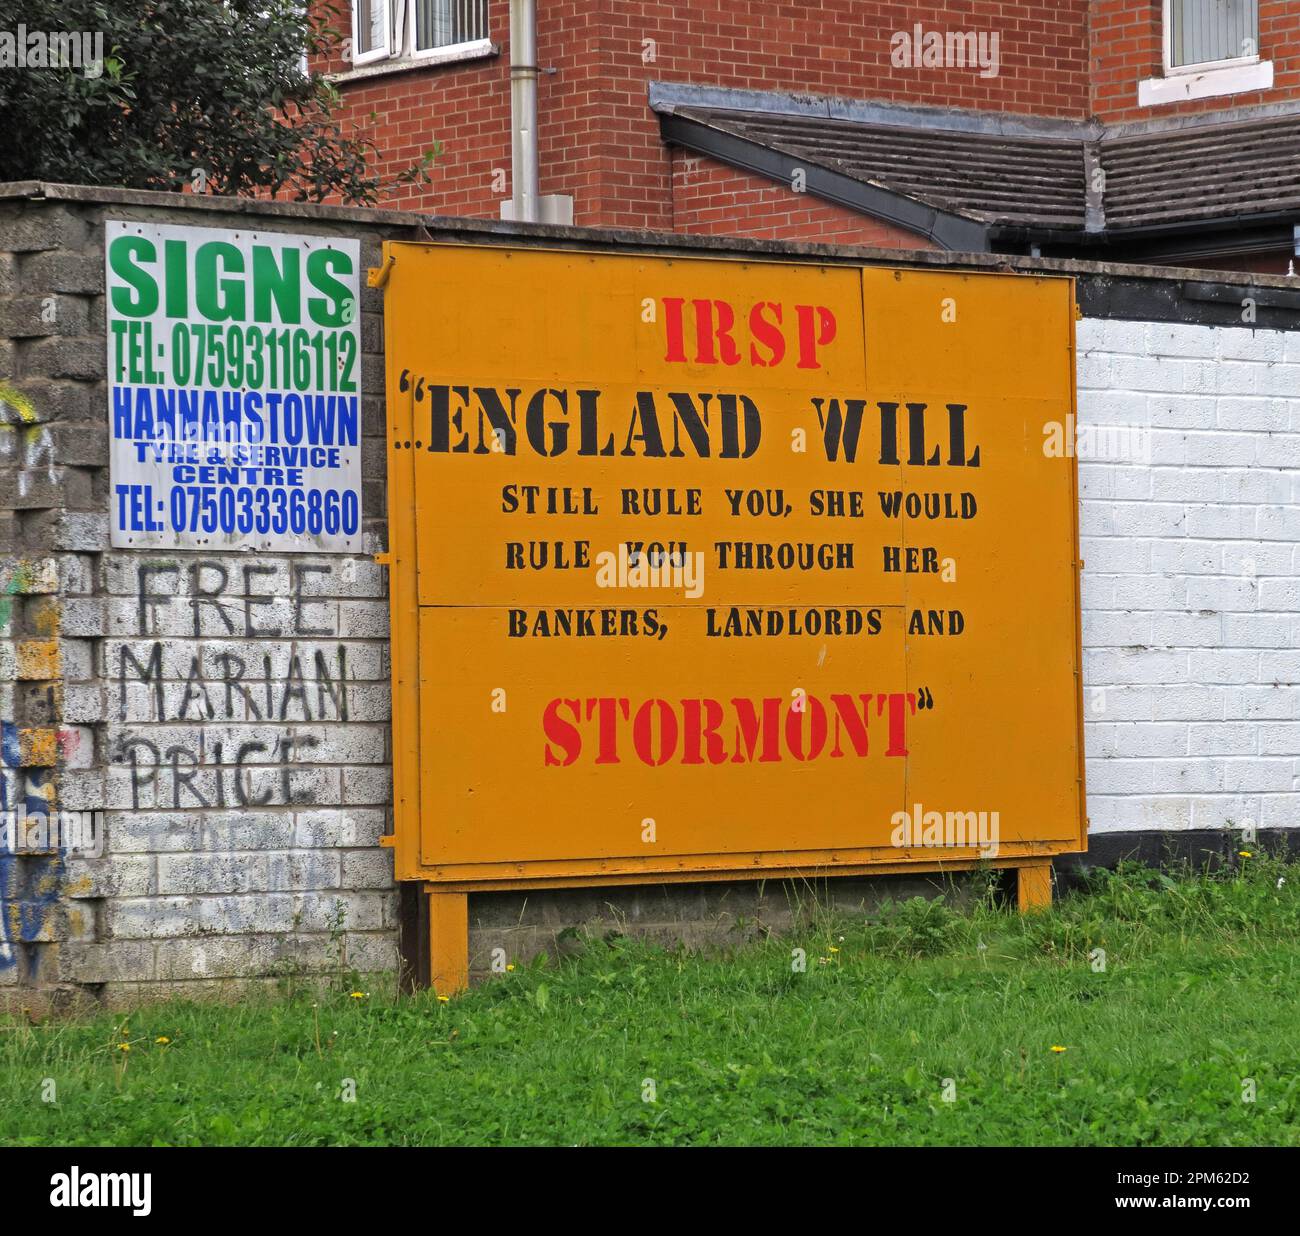 IRSP Graffiti - England wird dich immer noch regieren, sie würde dich durch ihre Banker, Vermieter und Stormont, die Sozialistische Partei der Irischen Republik, regieren Stockfoto